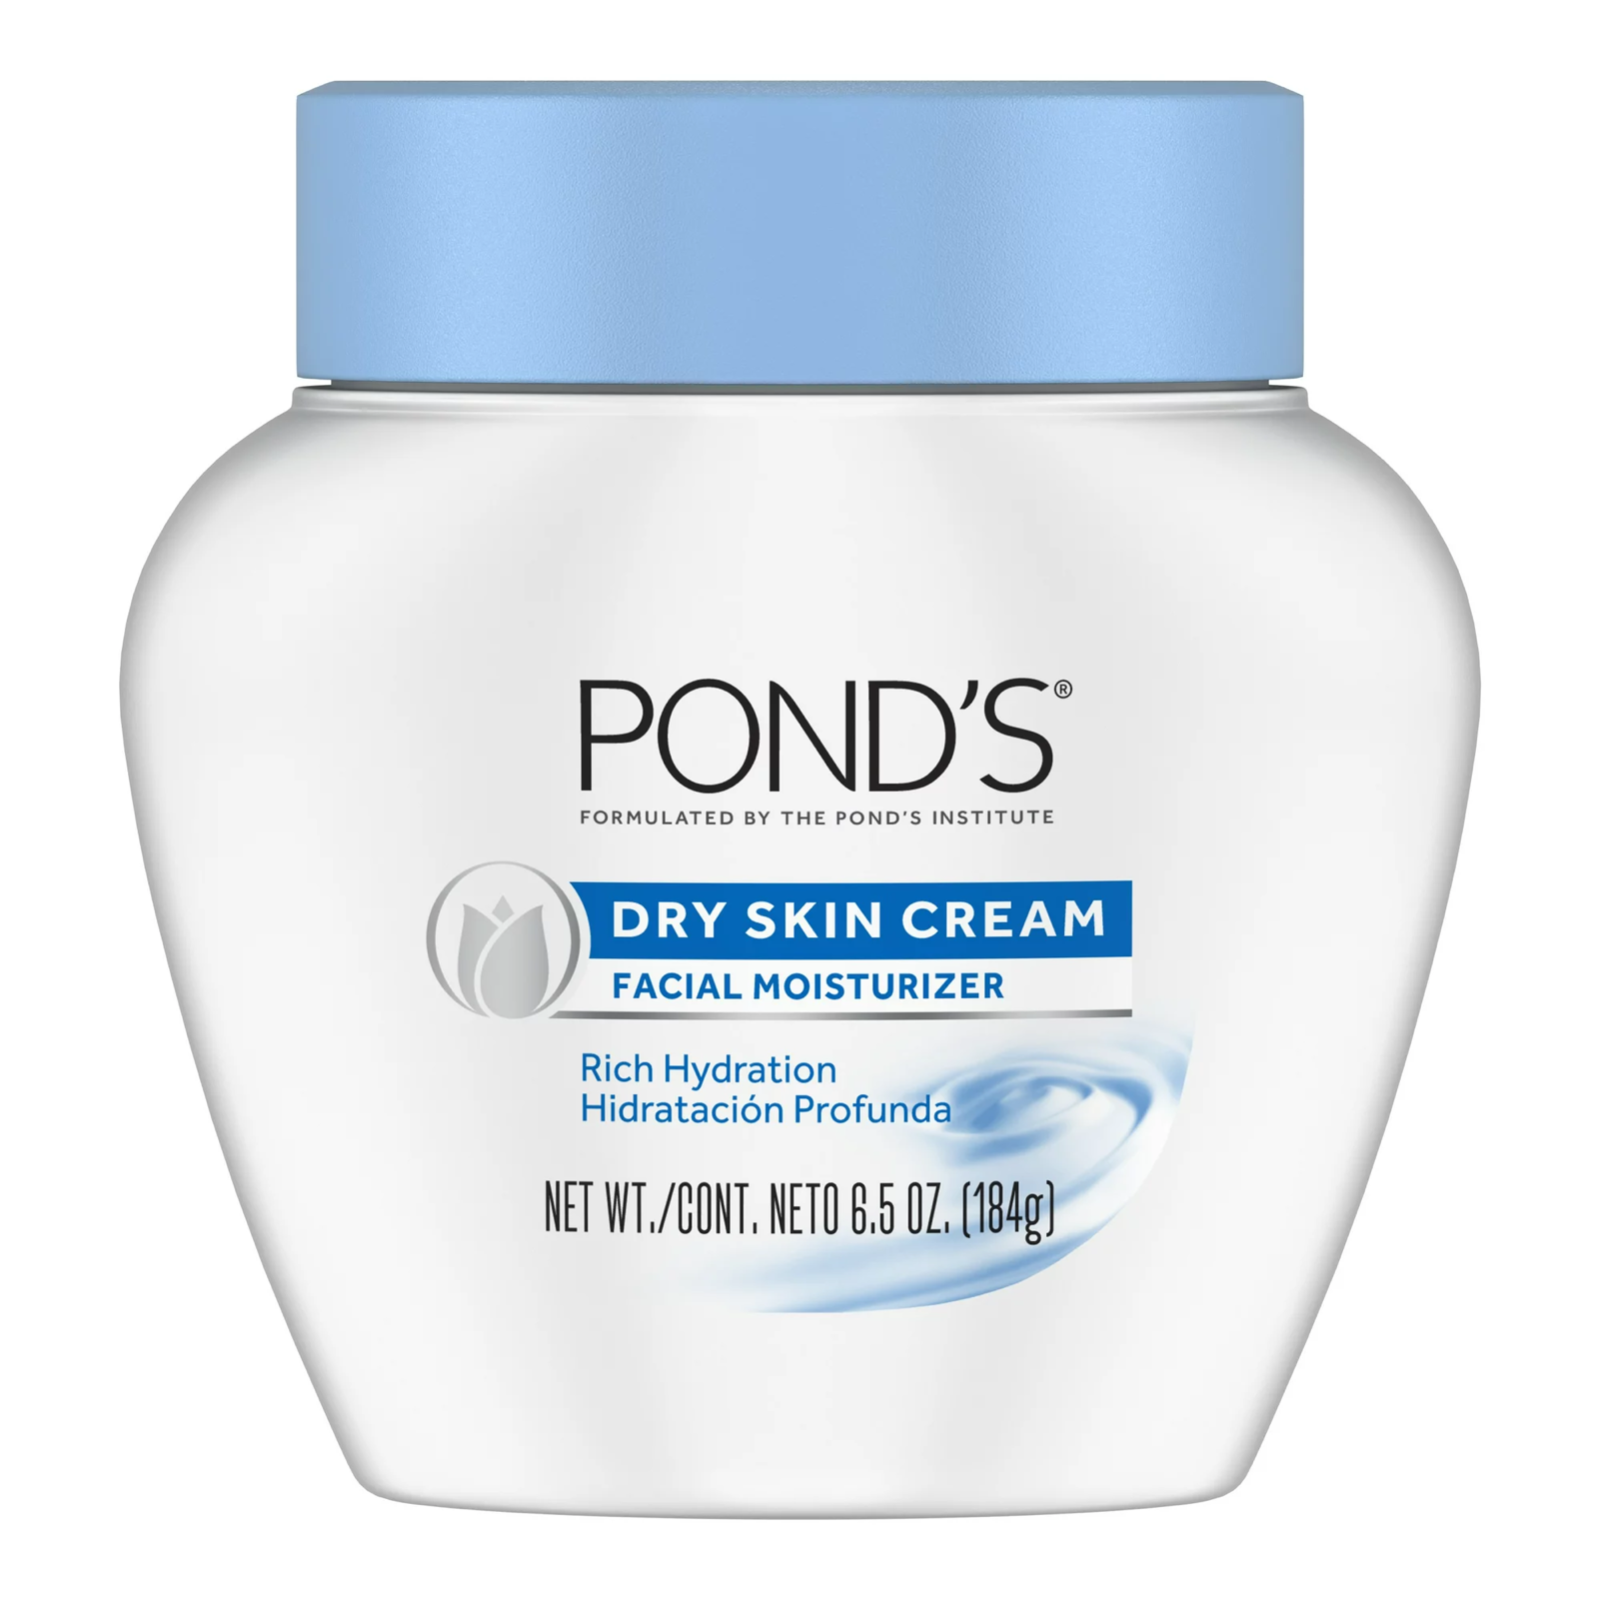 POND'S Dry Skin Facial Moisturizer Cream, 6.5 oz.. - $29.69